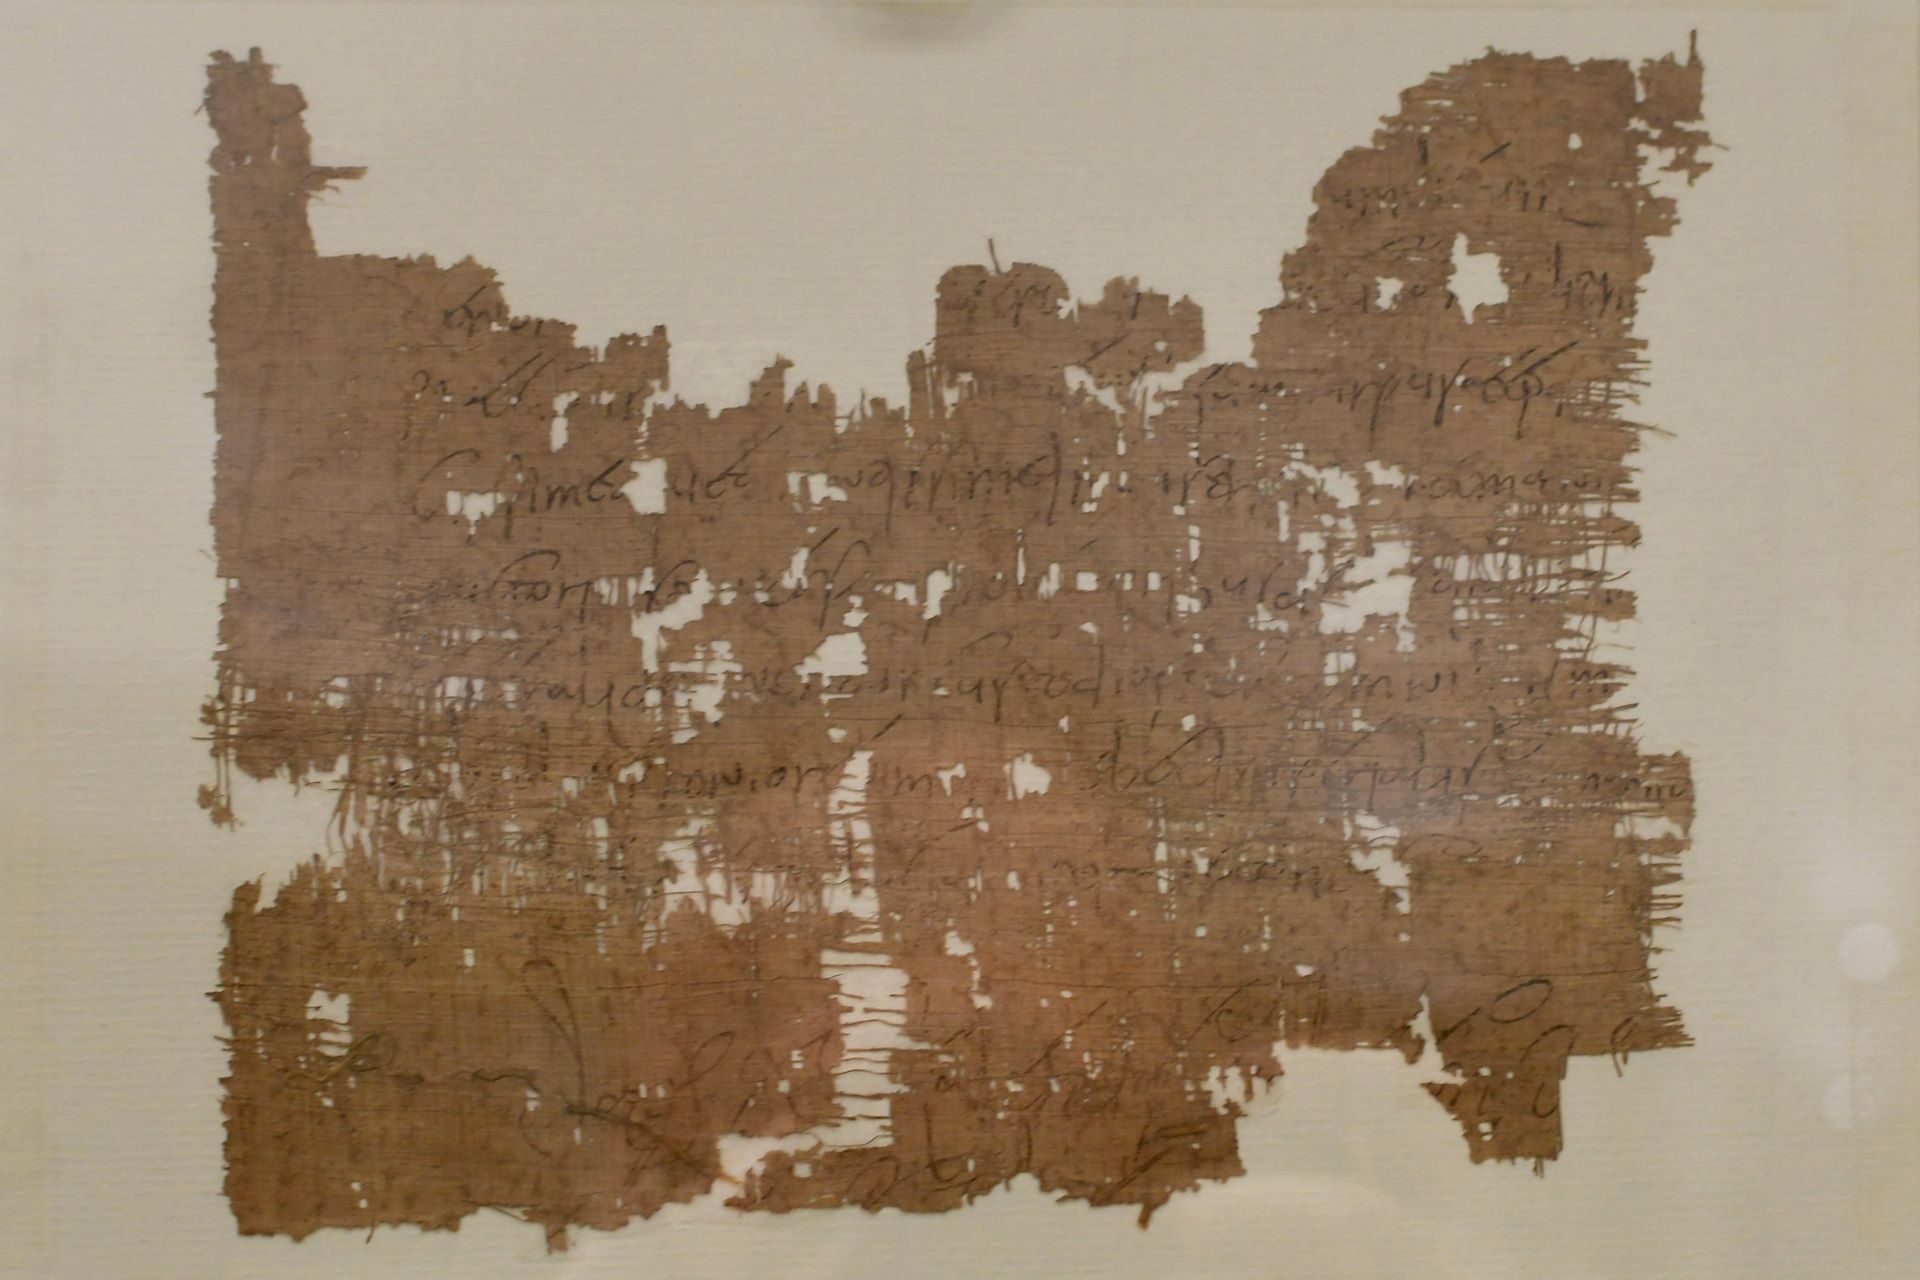 blog:2018-11-17-texte-aus-ferner-zeit:2018-11-17-wien-papyrusmuseum-130b.jpg